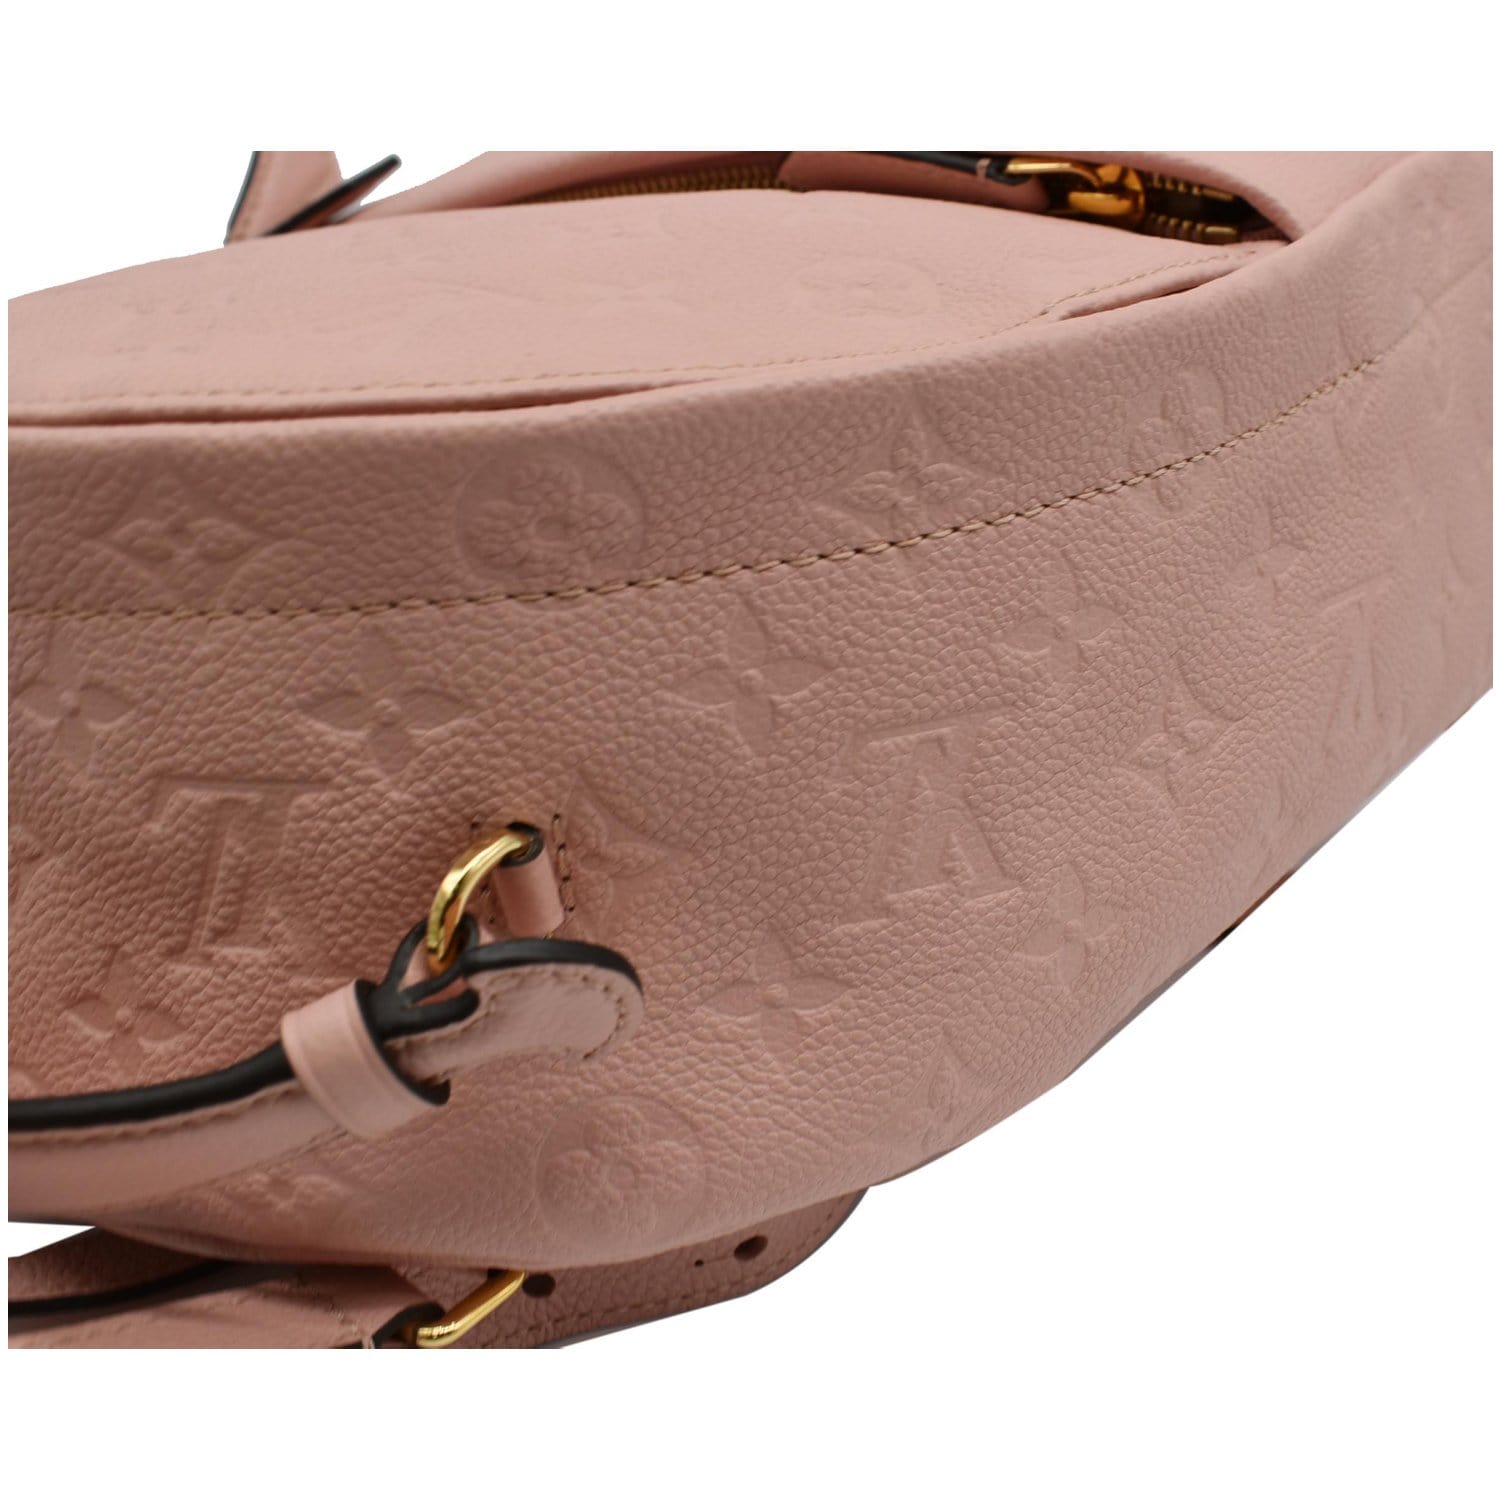 Louis Vuitton Sorbonne Backpack - For Sale on 1stDibs  backpack pins, lv  empreinte backpack, lv sorbonne backpack